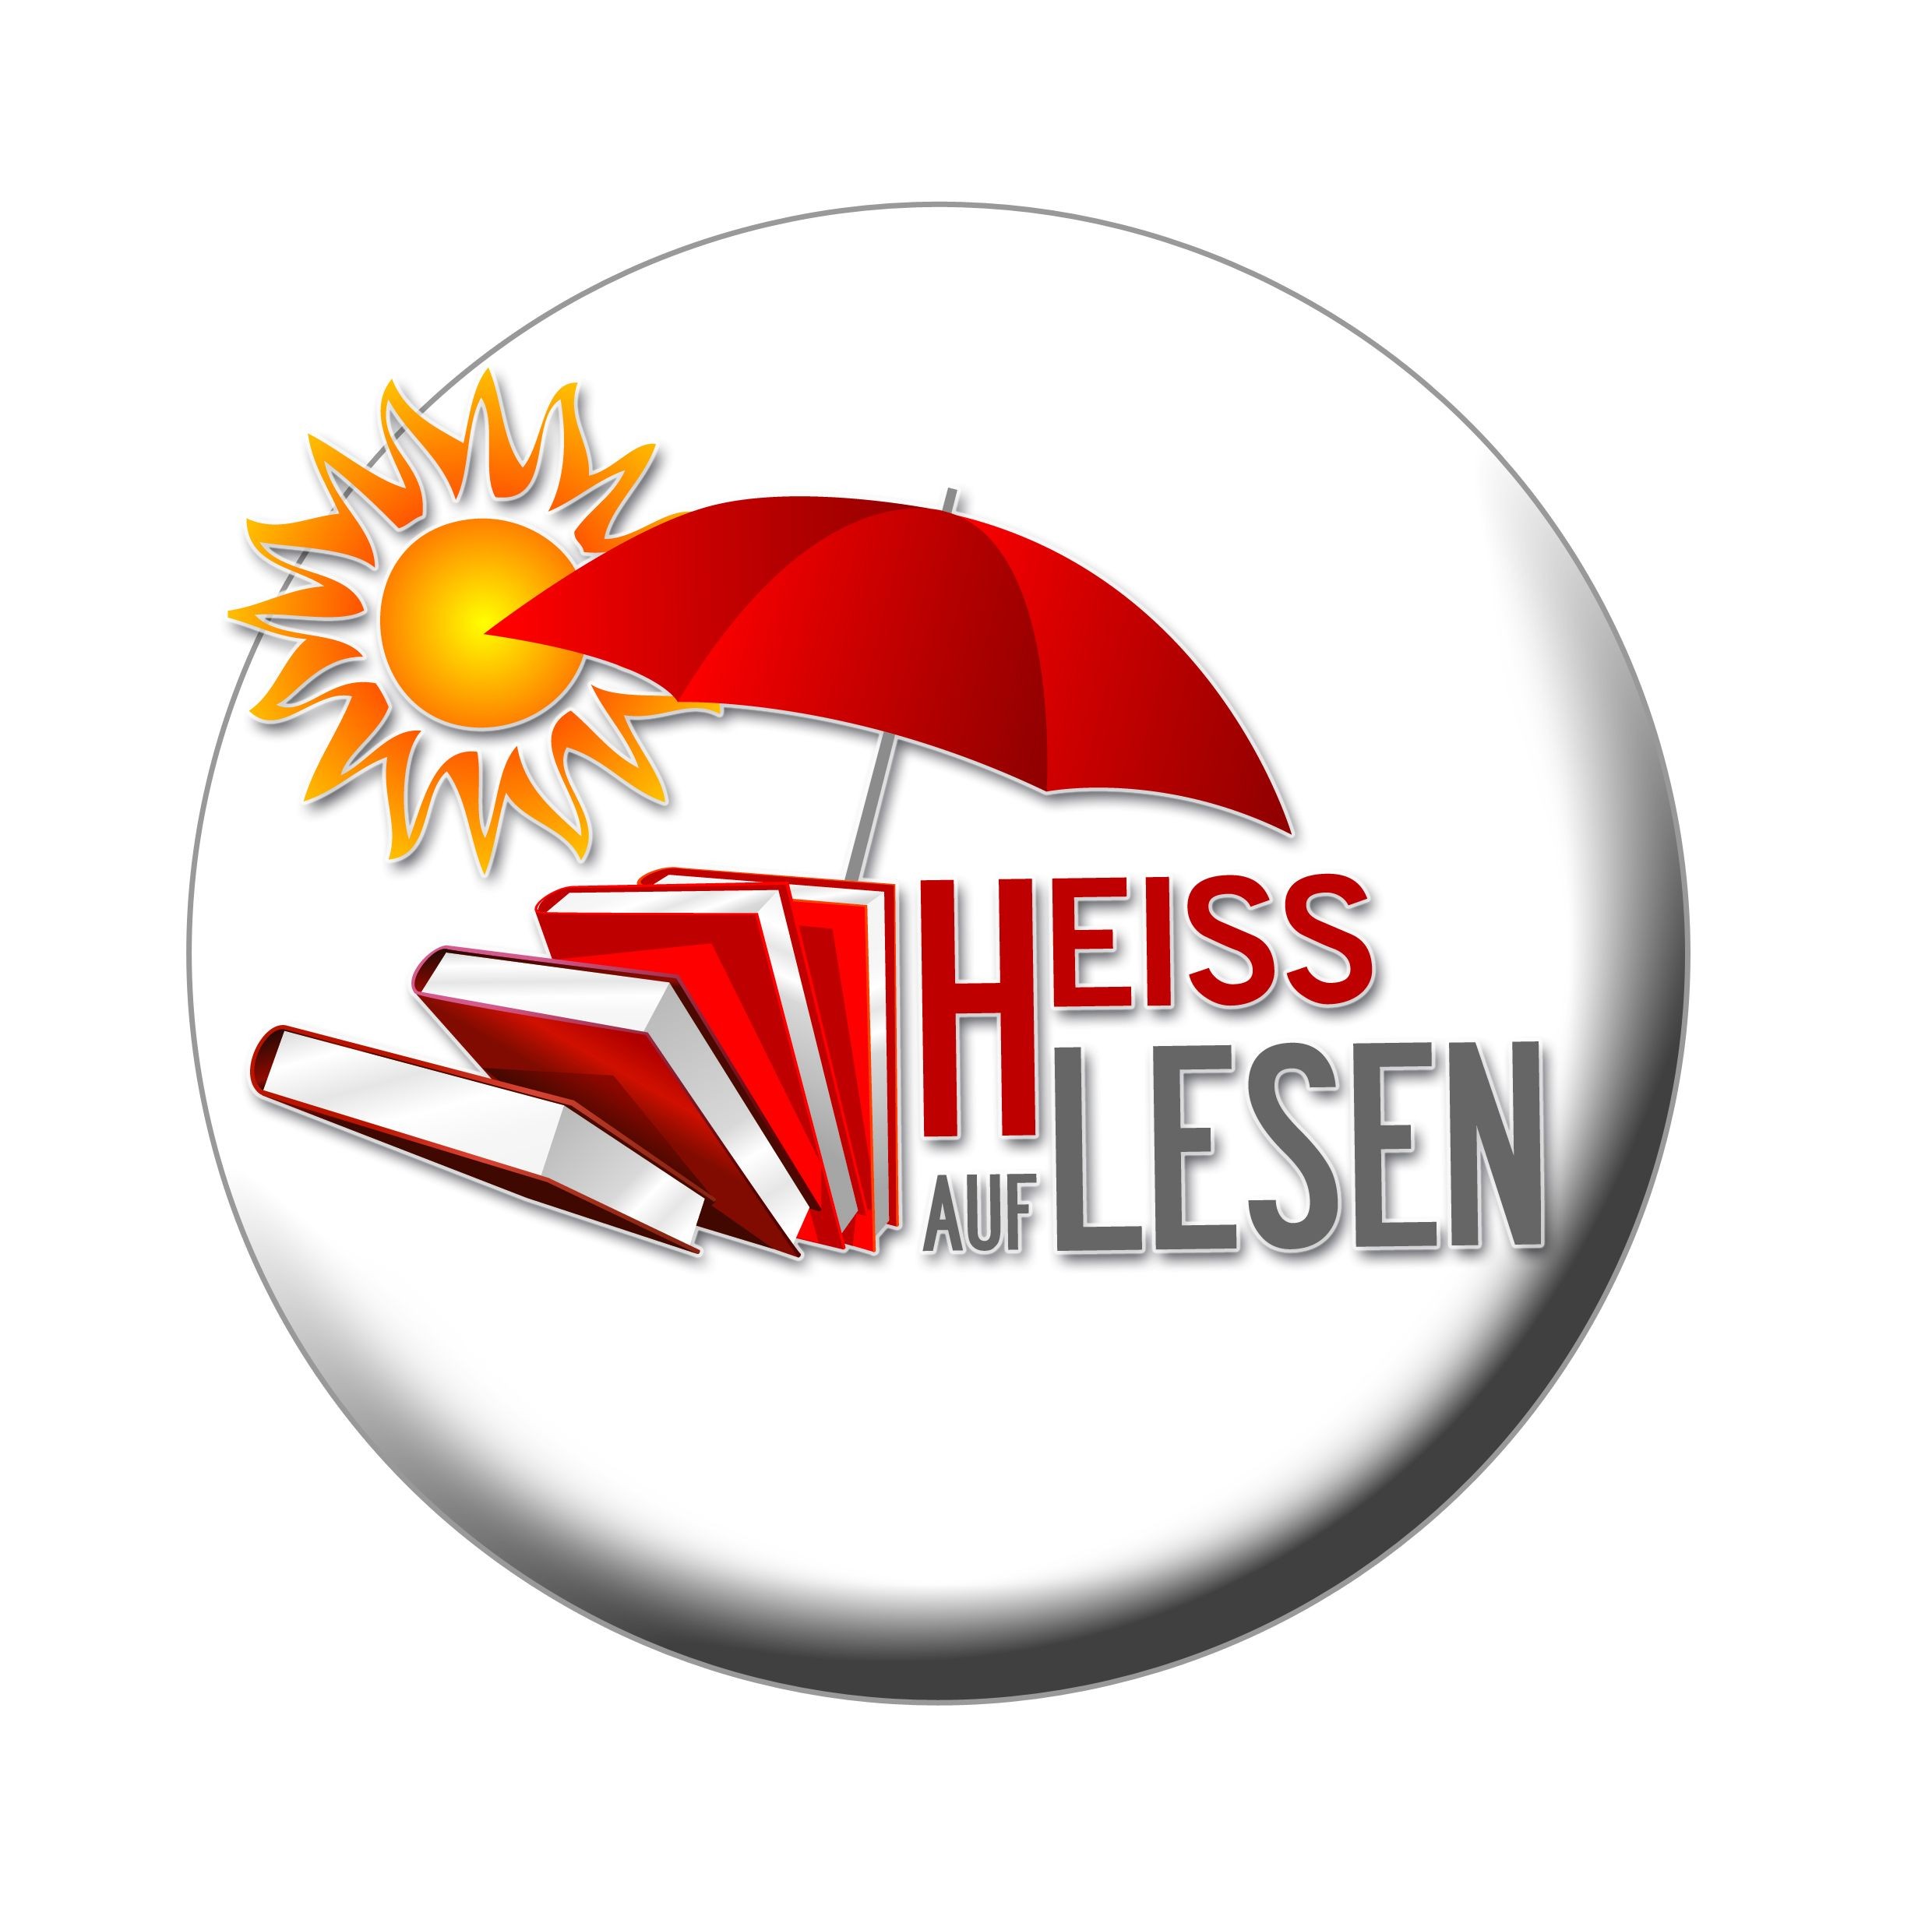  Logo der Sommer-Leseclubaktion HEISS AUF LESEN 